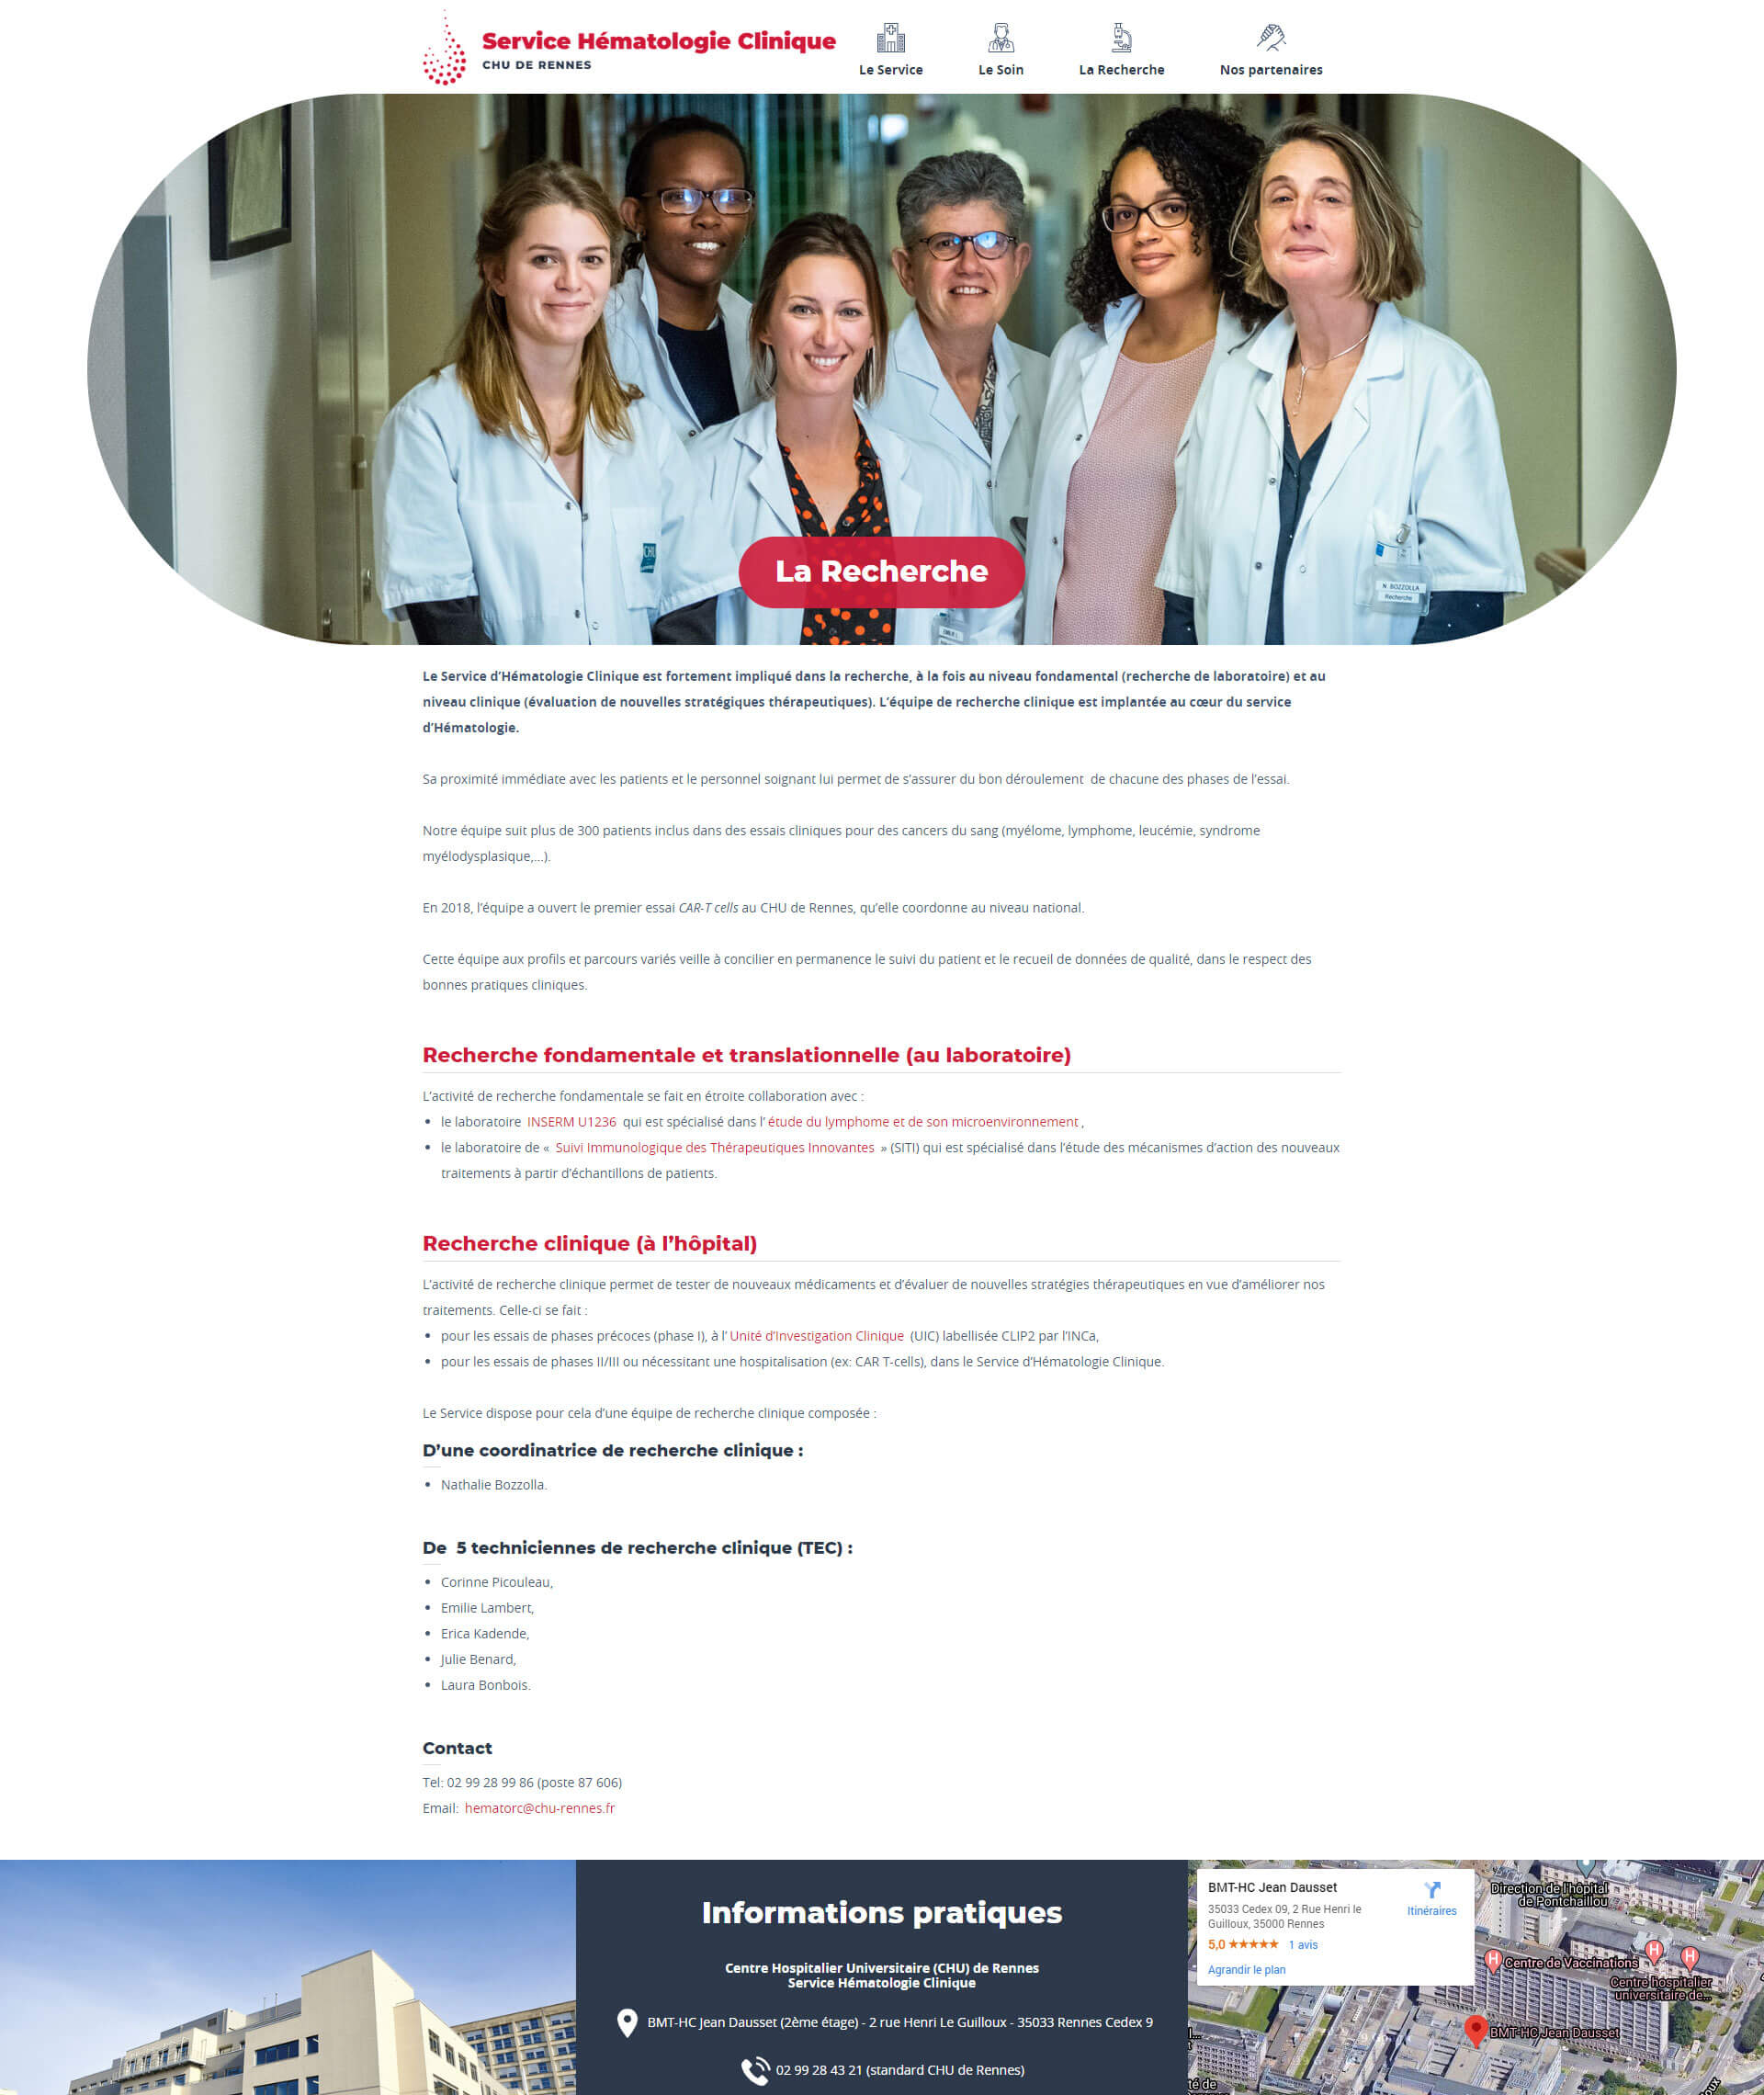 Hématologie clinique, CHU de Rennes - Réalisation d'un site Internet médical/hospitalier